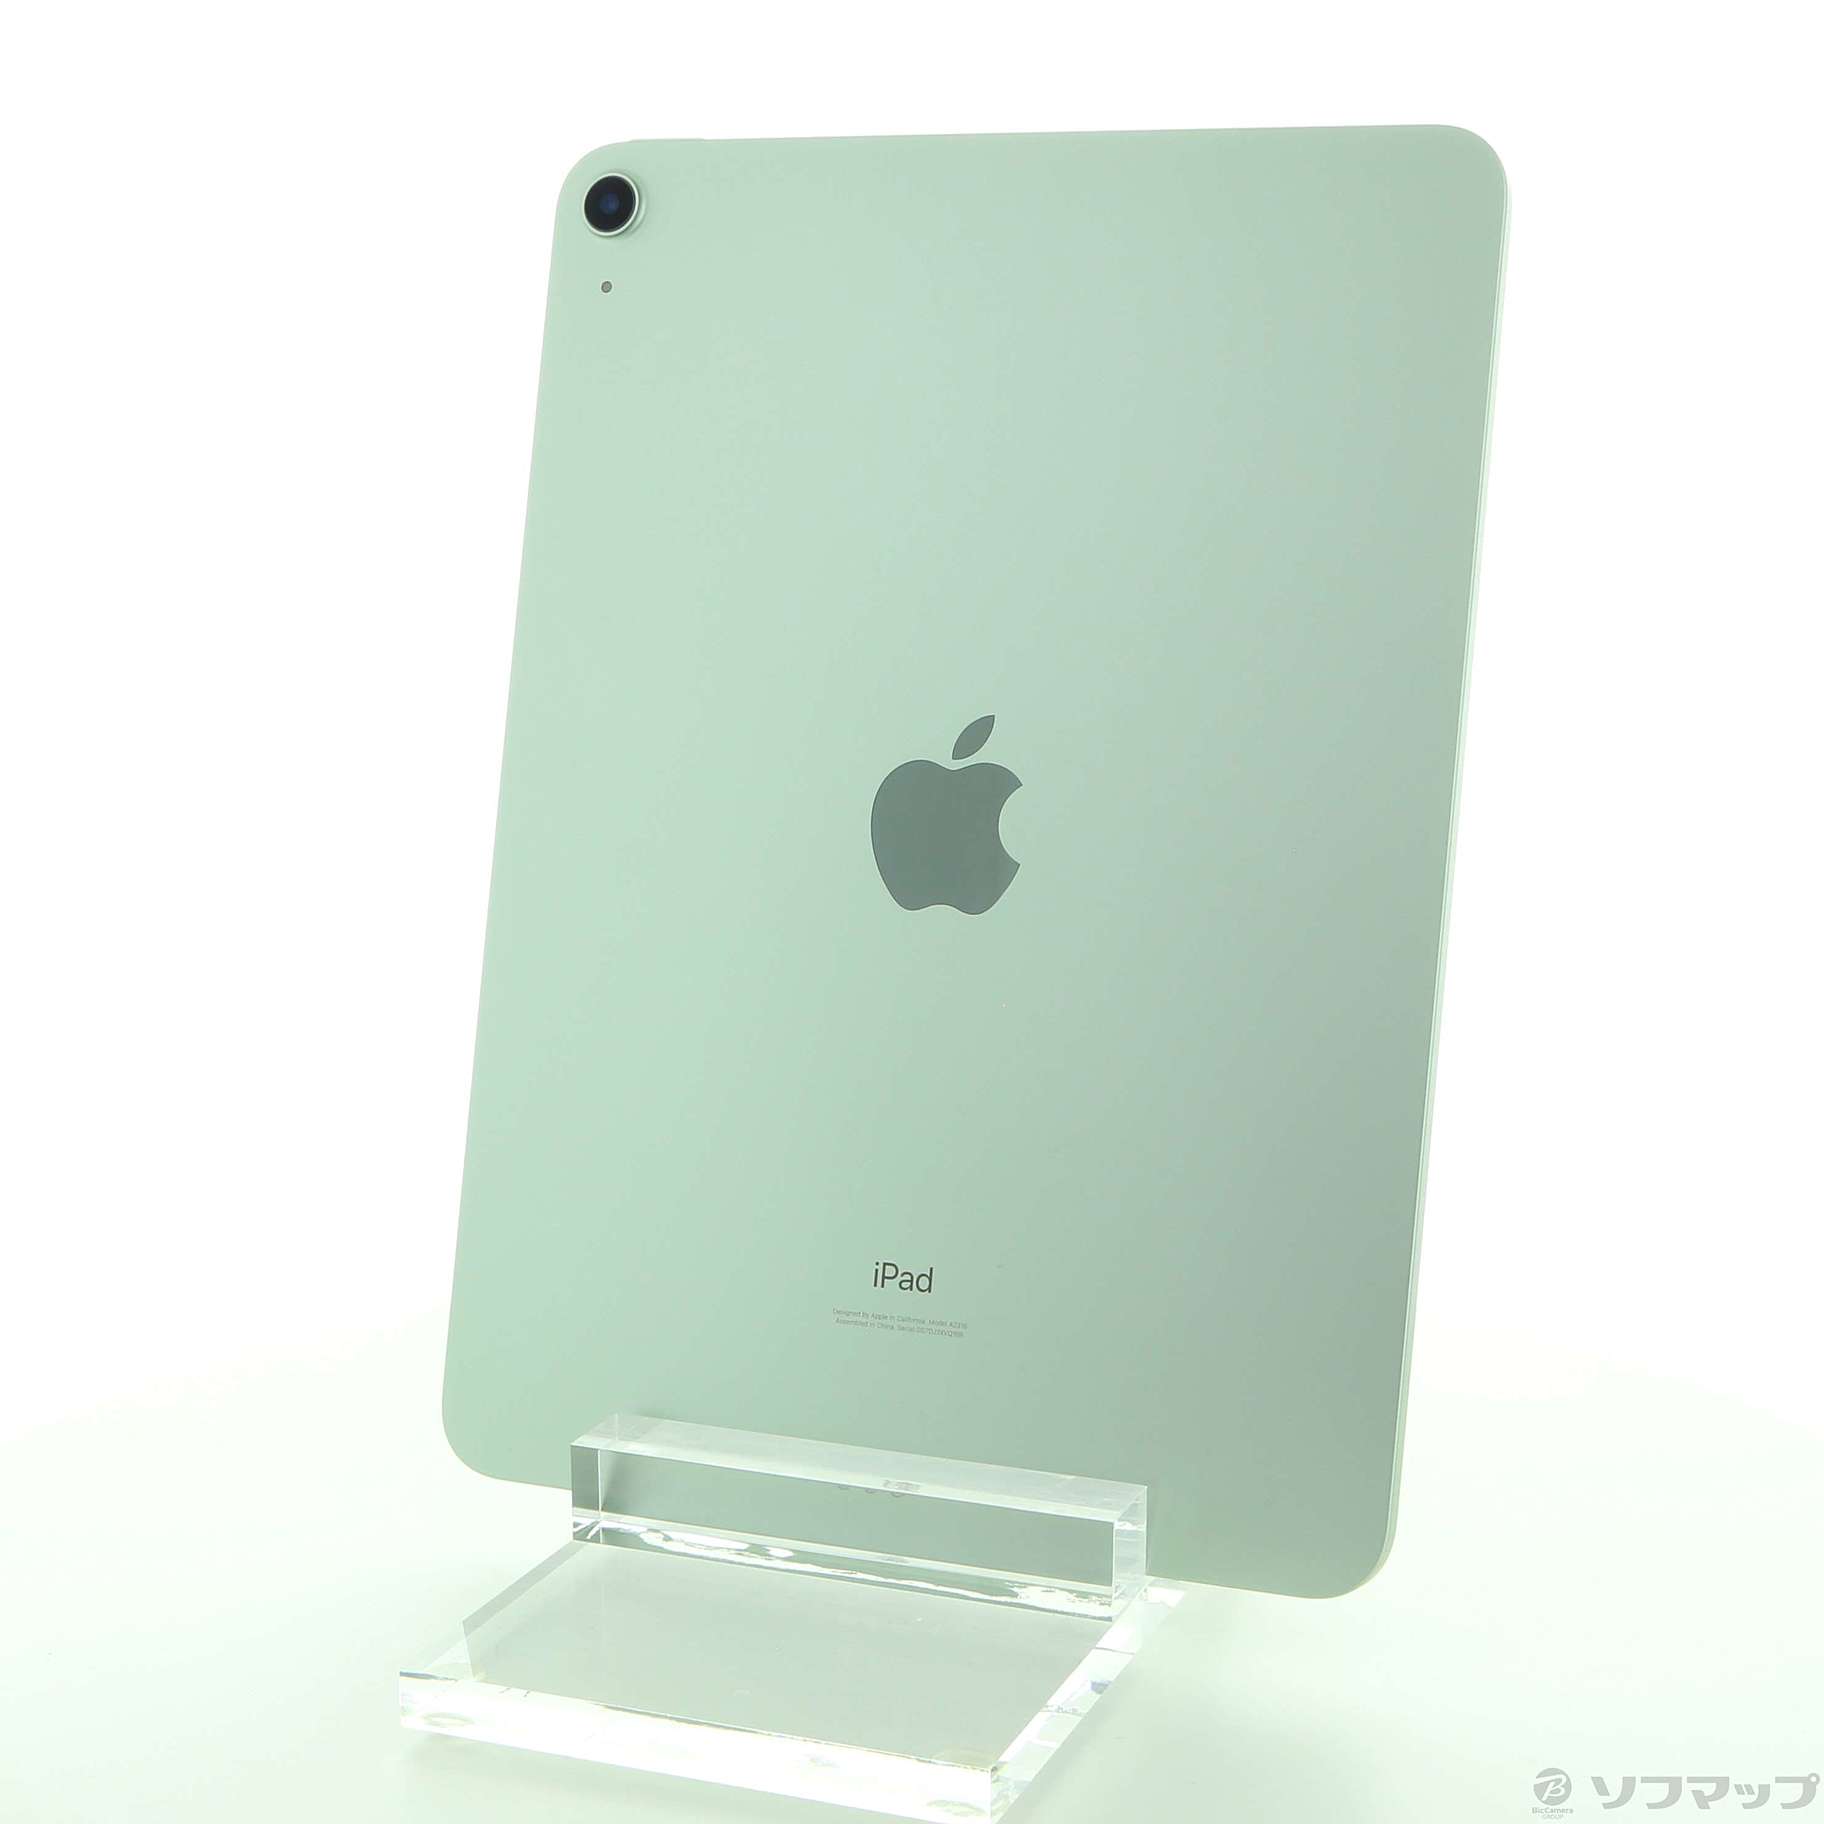 掘り出し物 【新品未使用】iPad グリーン WiFi 64GB Air4 タブレット